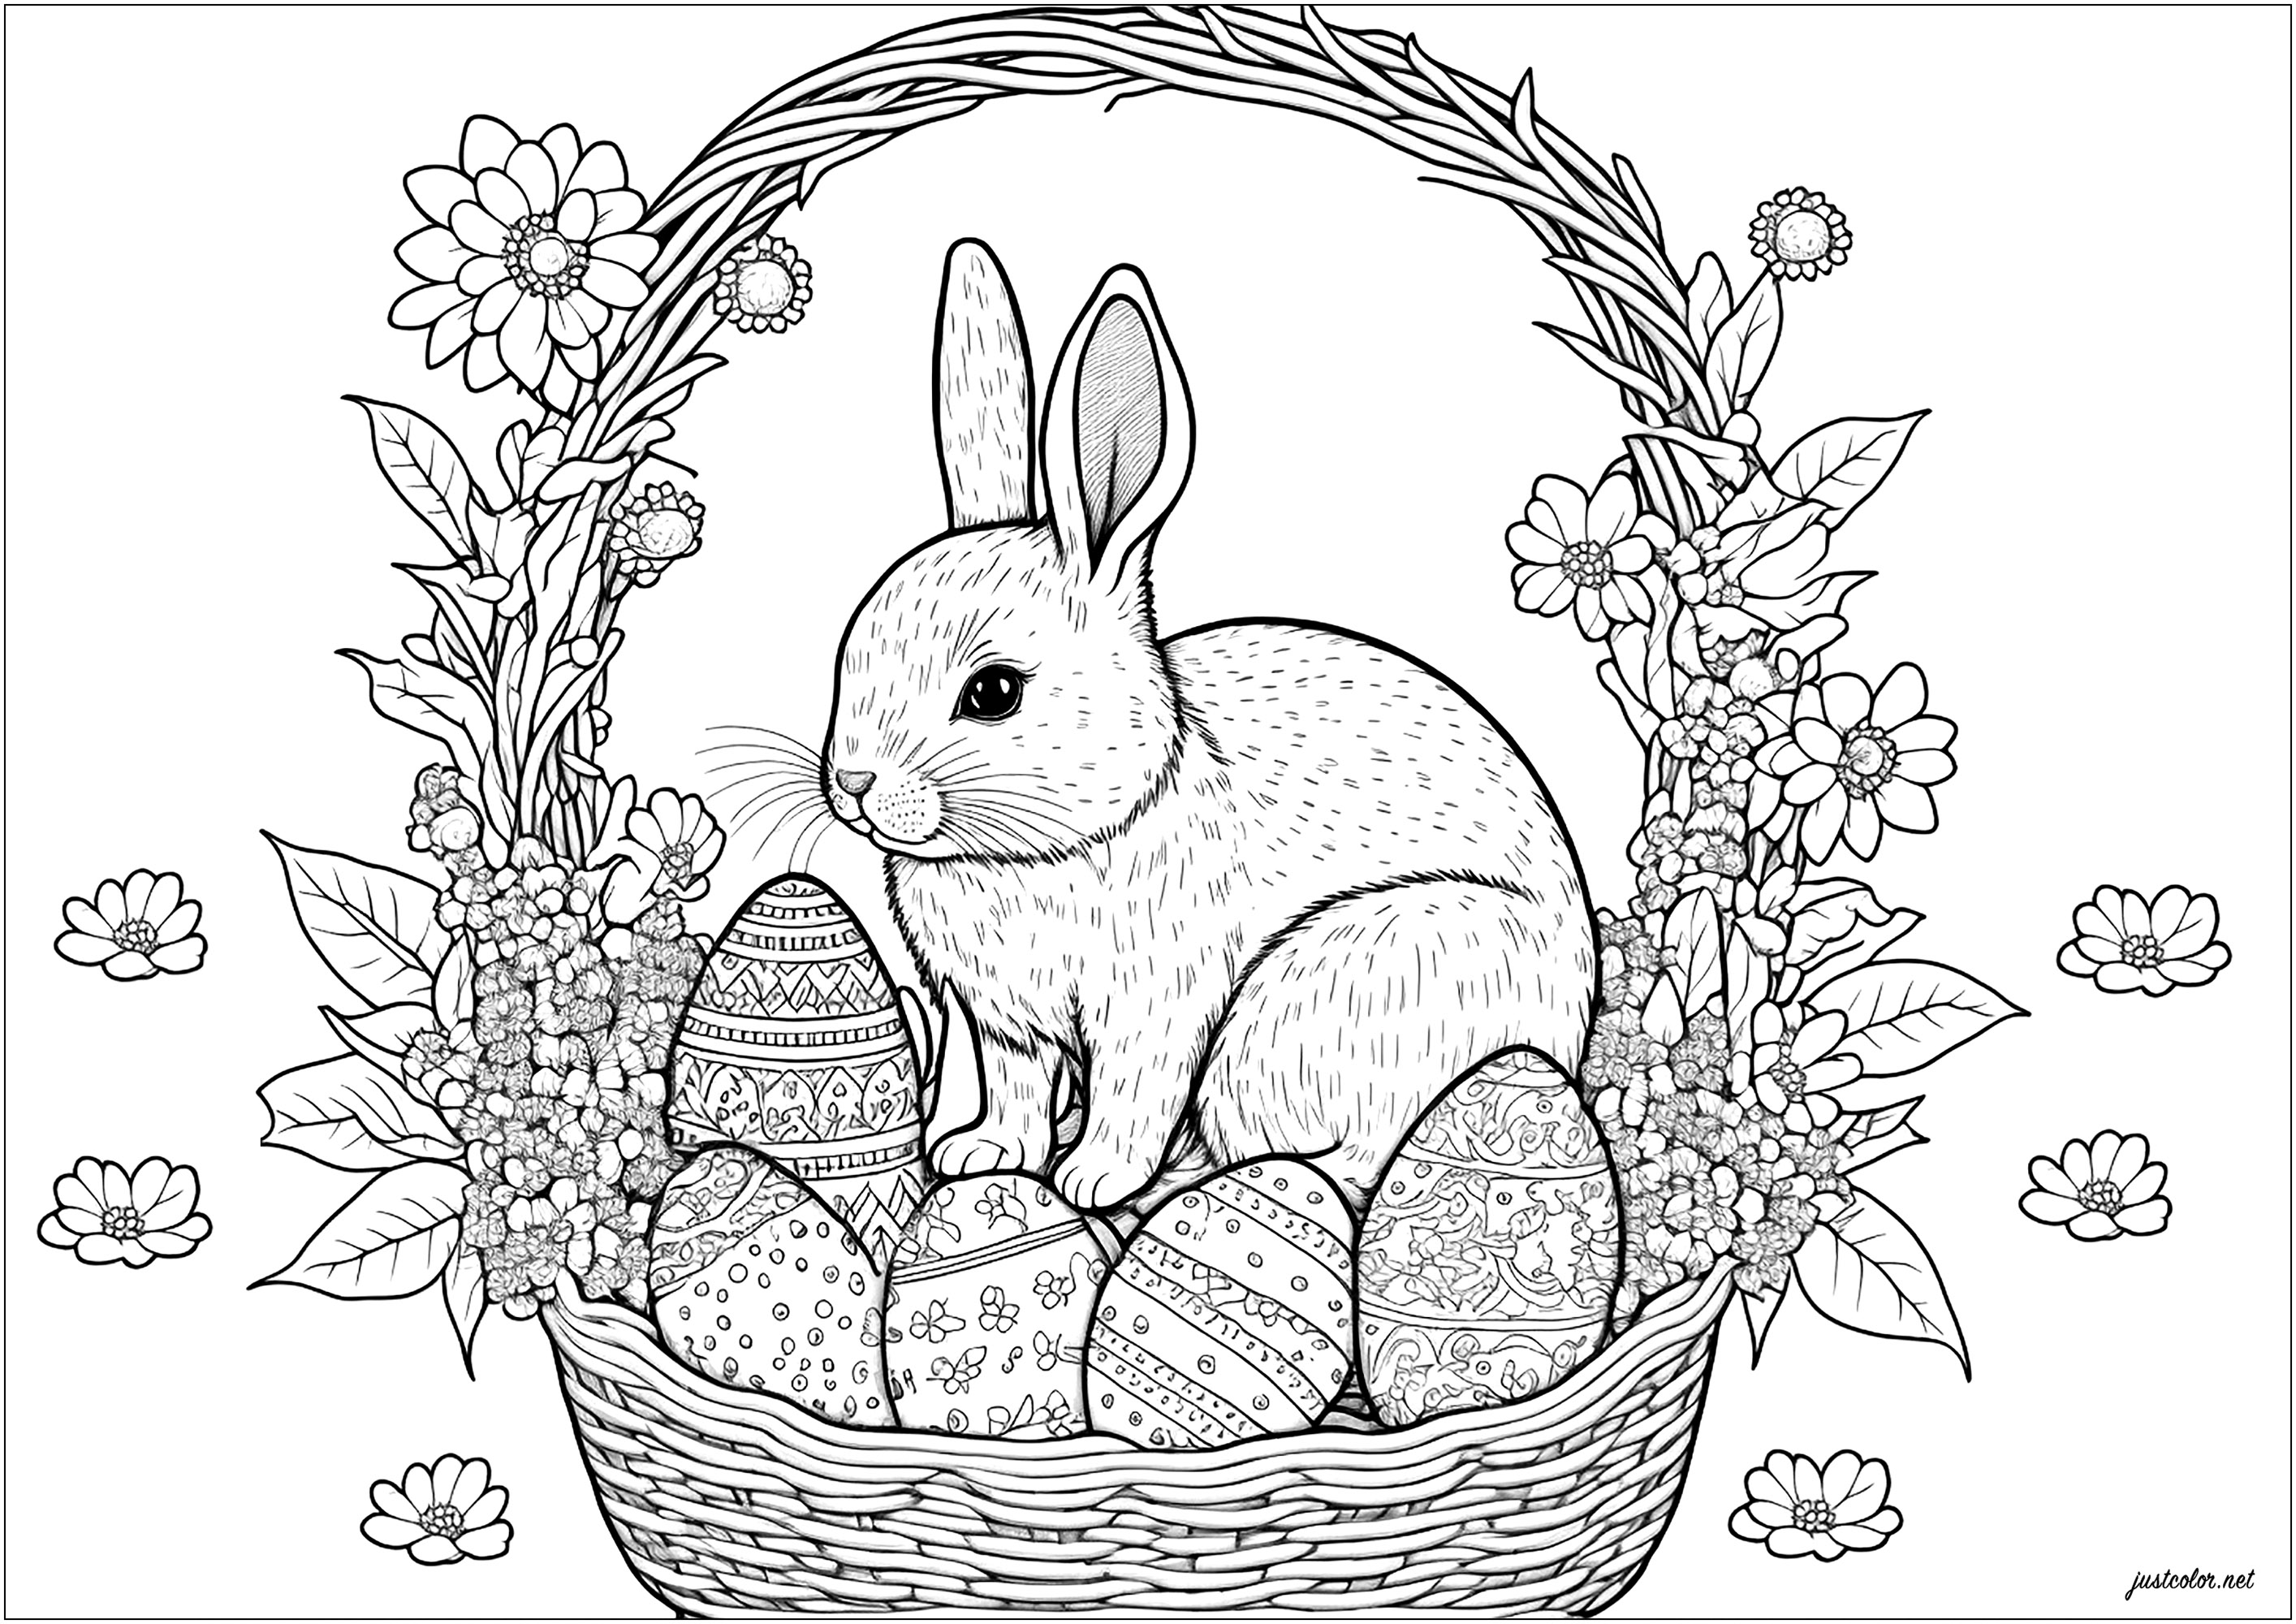 Bonito colorido de una cesta de huevos de Pascua con un conejo dentro